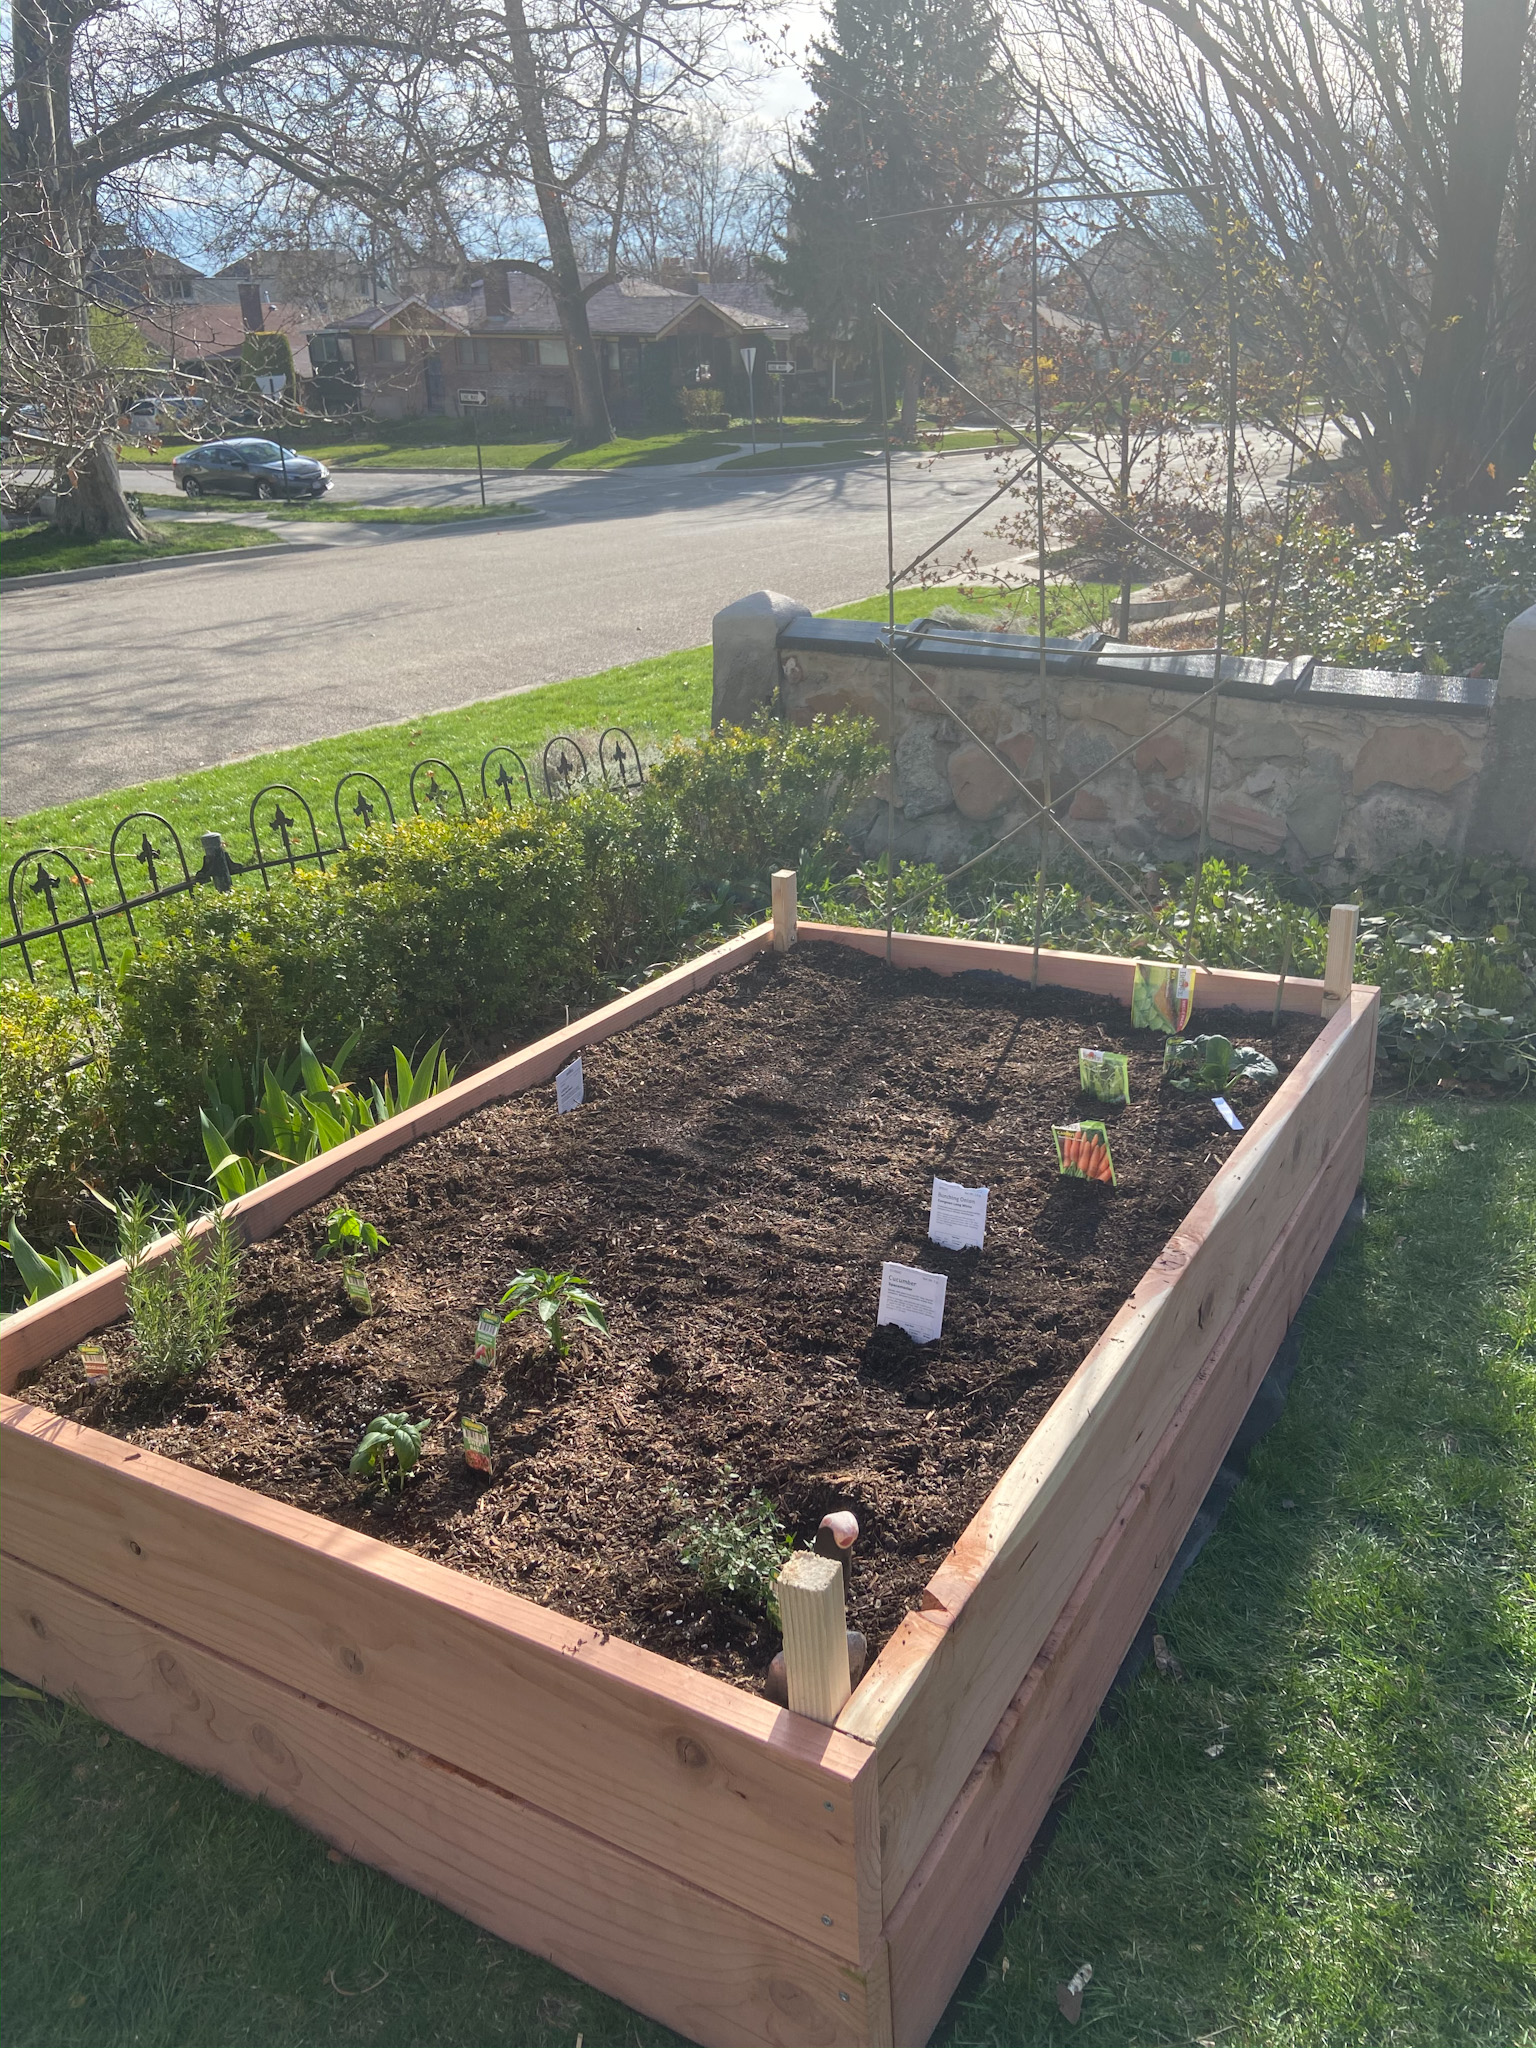 How To Make A Simple Garden Planter Box, How To Make An Easy Garden Box